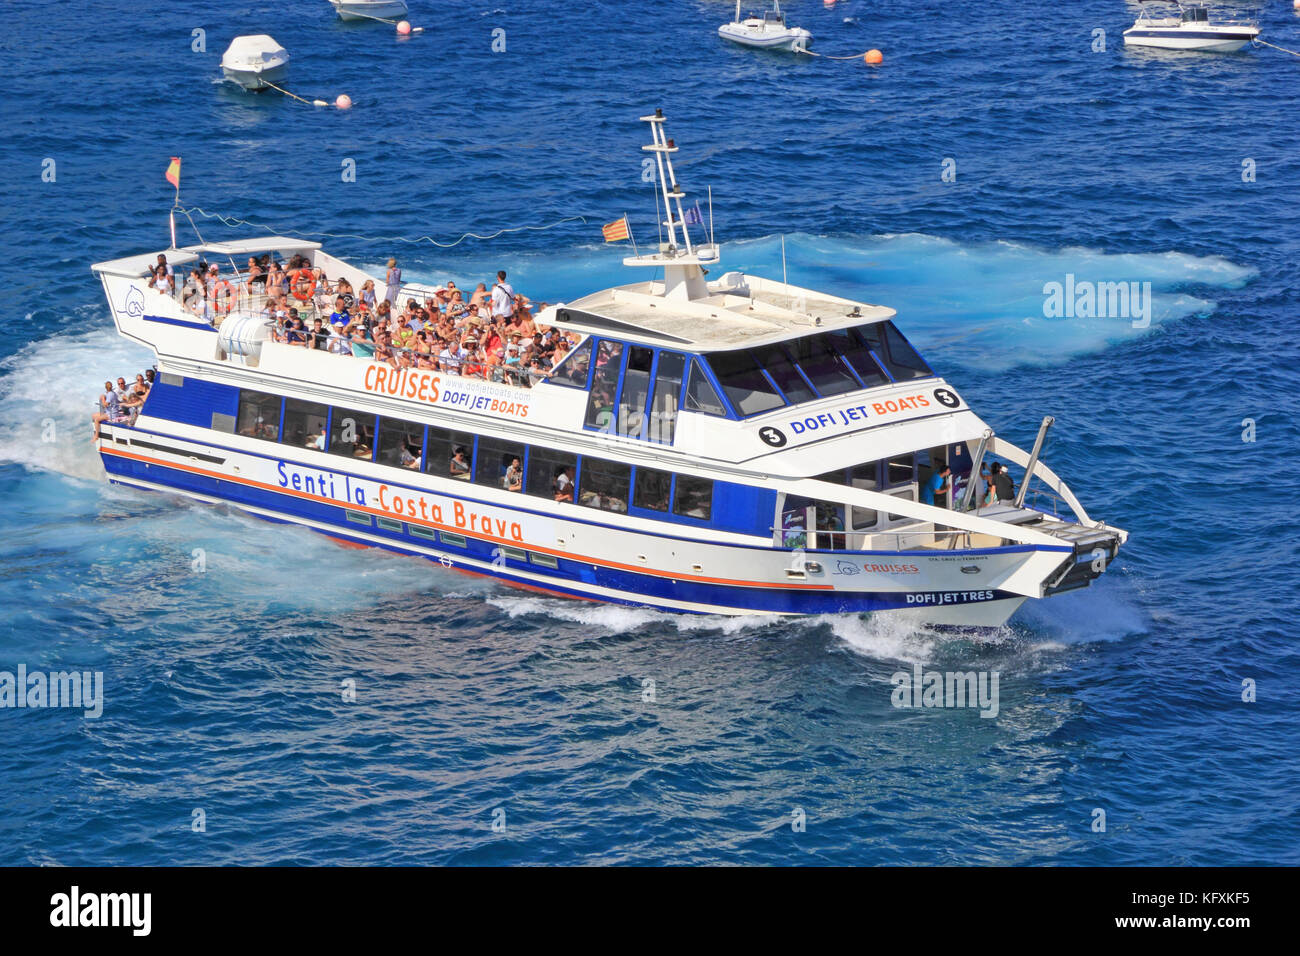 Jet Boat Dori utilisé pour des excursions touristiques, Tossa de Mar, Espagne Banque D'Images